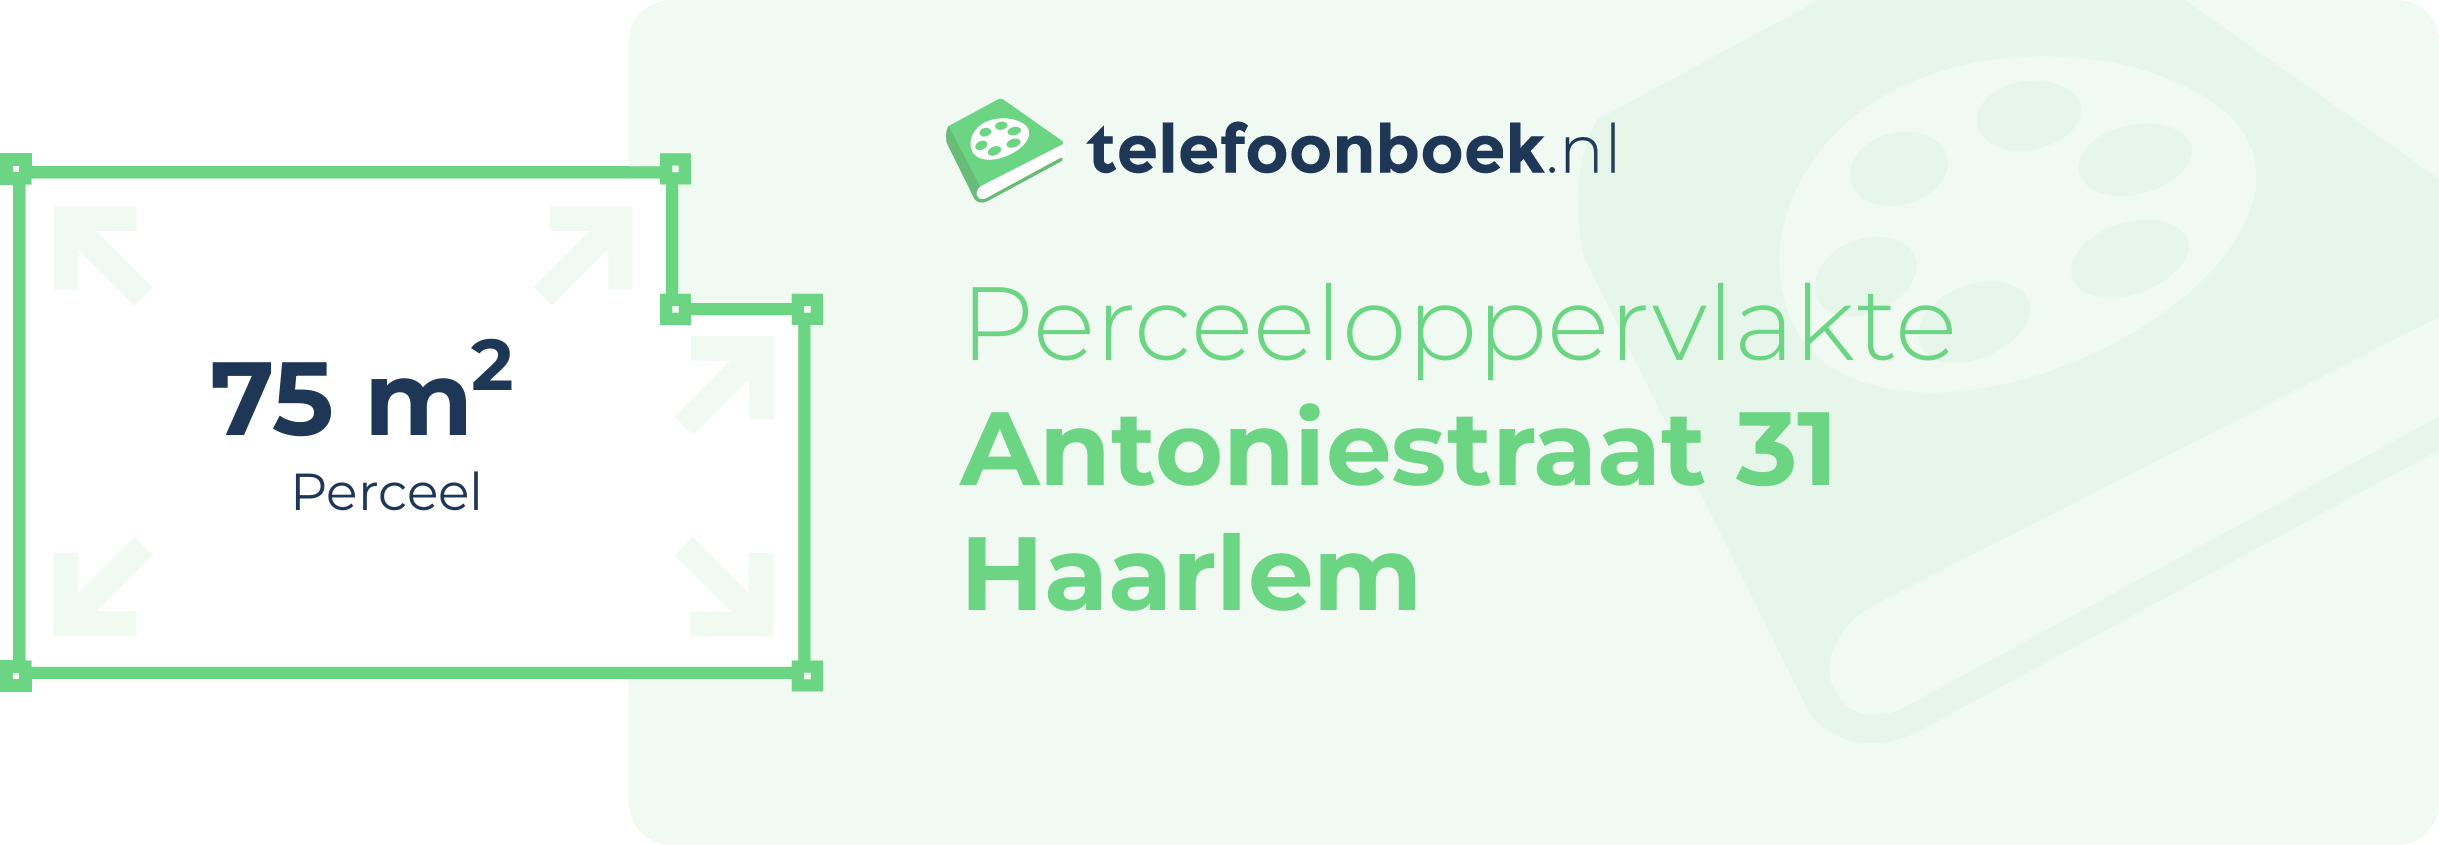 Perceeloppervlakte Antoniestraat 31 Haarlem